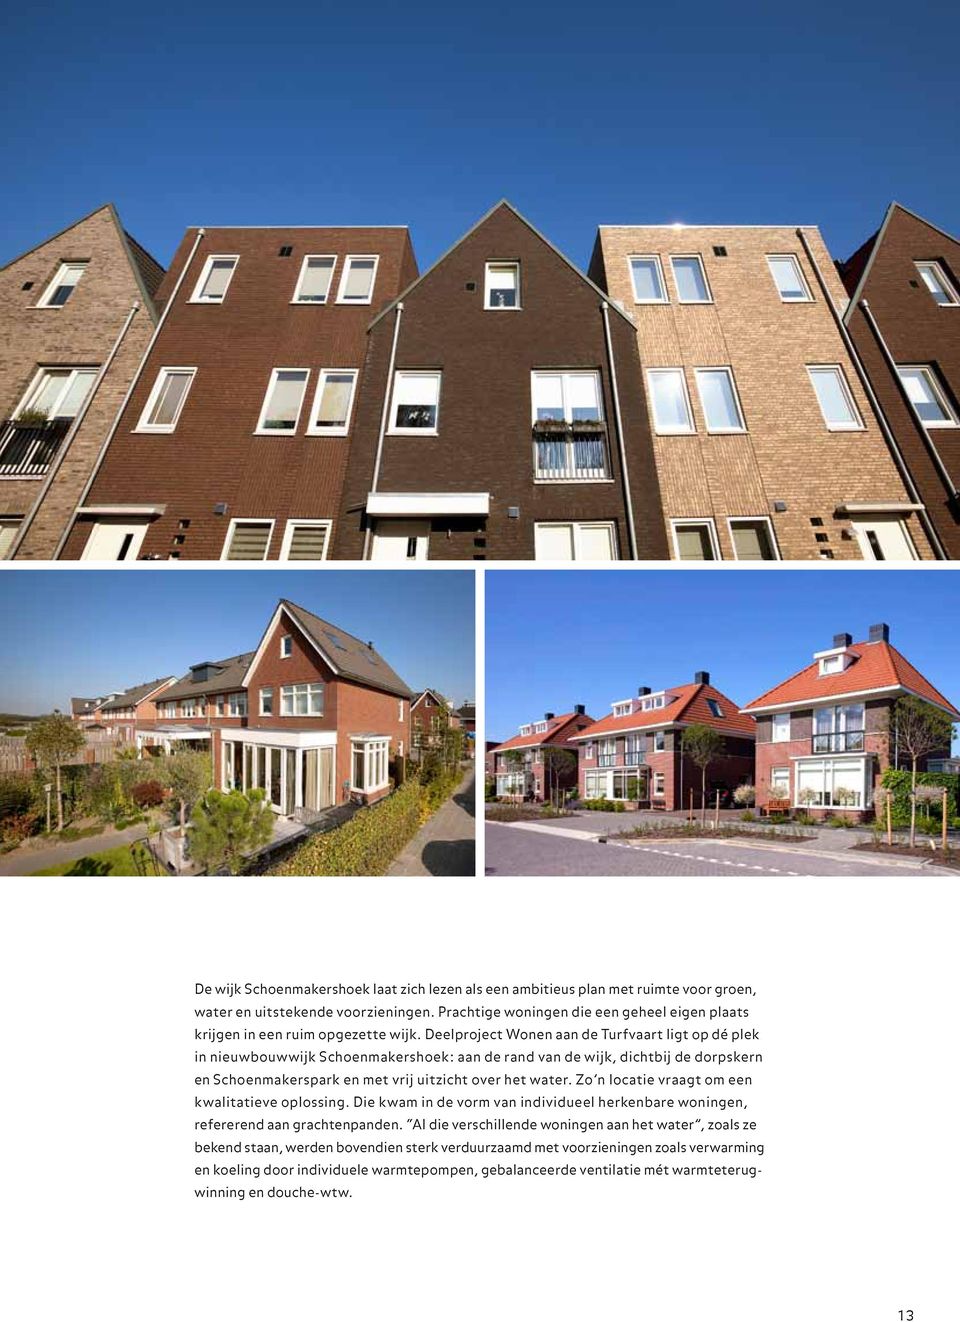 Deelproject Wonen aan de Turfvaart ligt op dé plek in nieuwbouwwijk Schoenmakershoek: aan de rand van de wijk, dichtbij de dorpskern en Schoenmakerspark en met vrij uitzicht over het water.